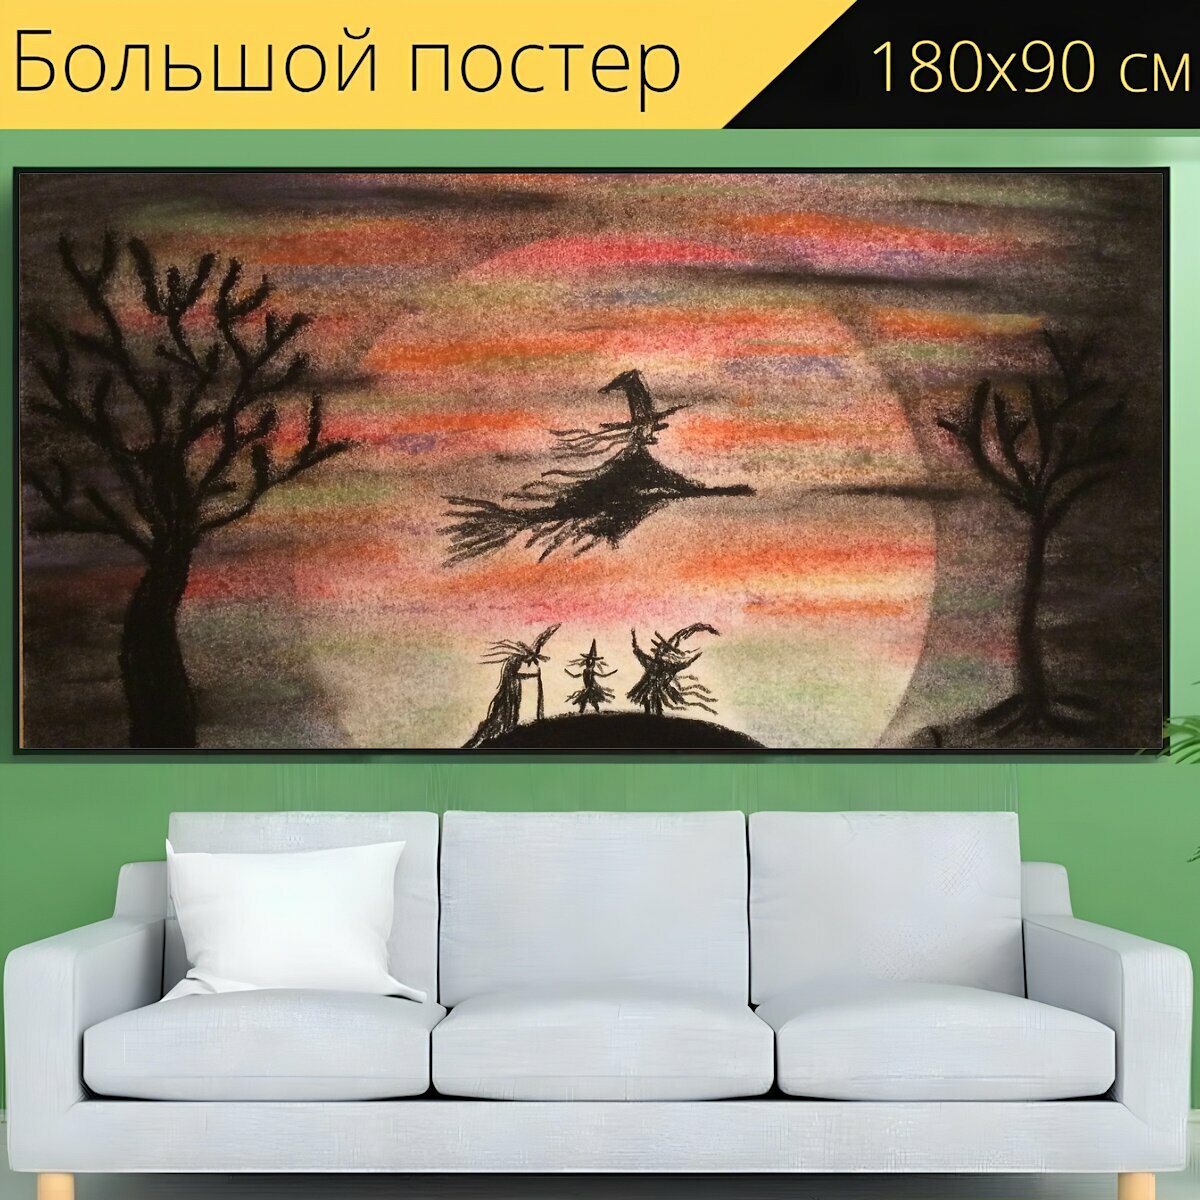 Большой постер "Ведьма, ночь, сказка" 180 x 90 см. для интерьера